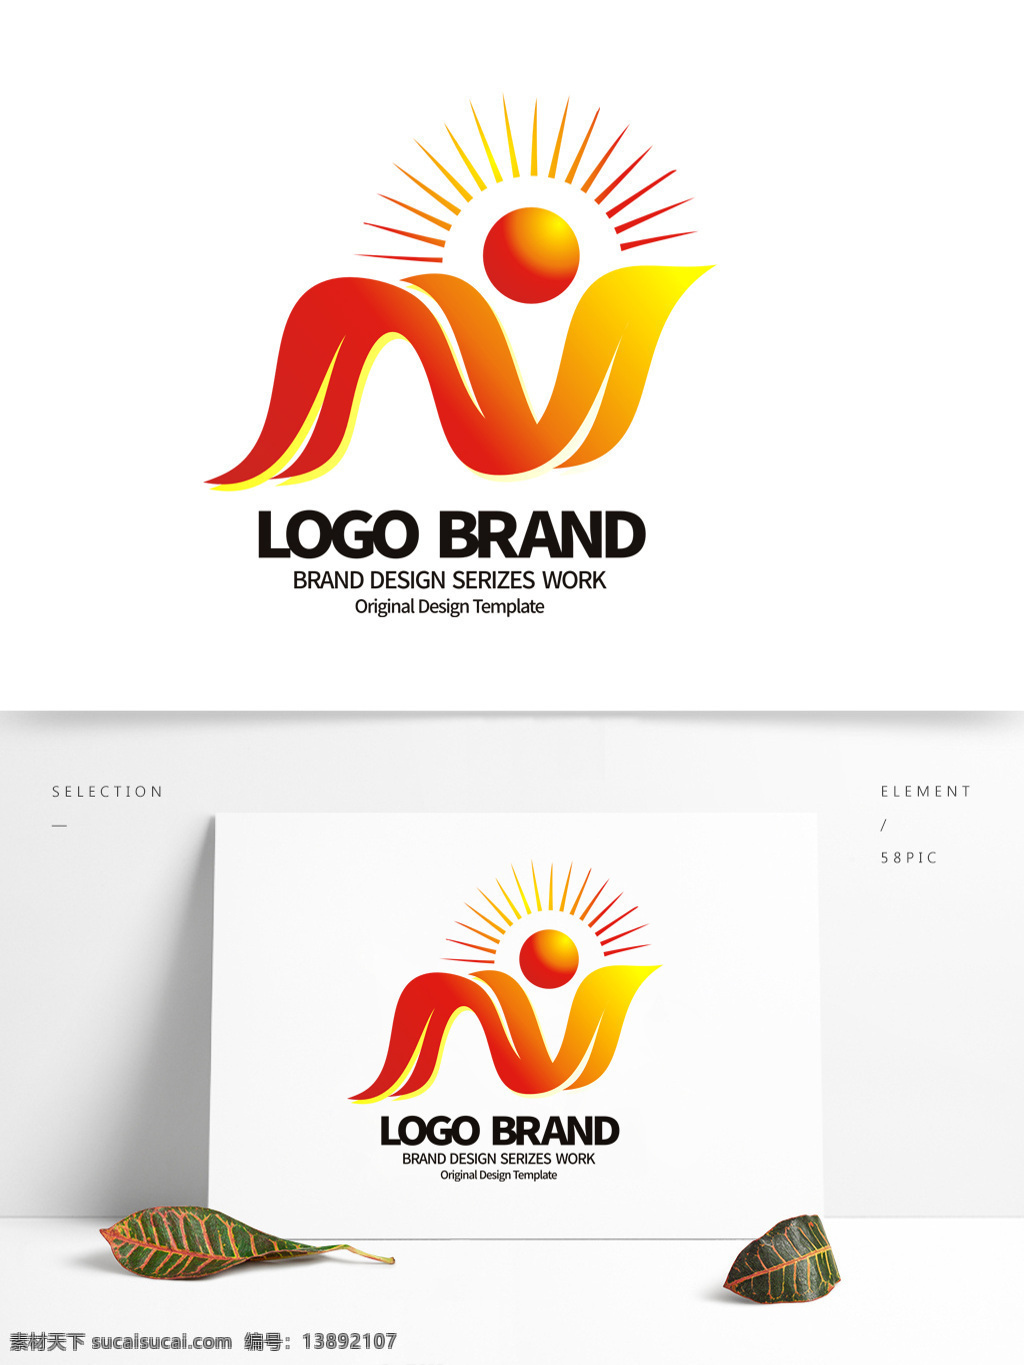 简约 现代 红 黄 飘带 n 字母 公司 logo 标志 刷新图标 标志设计 公司标志设计 企业 会徽标志设计 企业标志设计